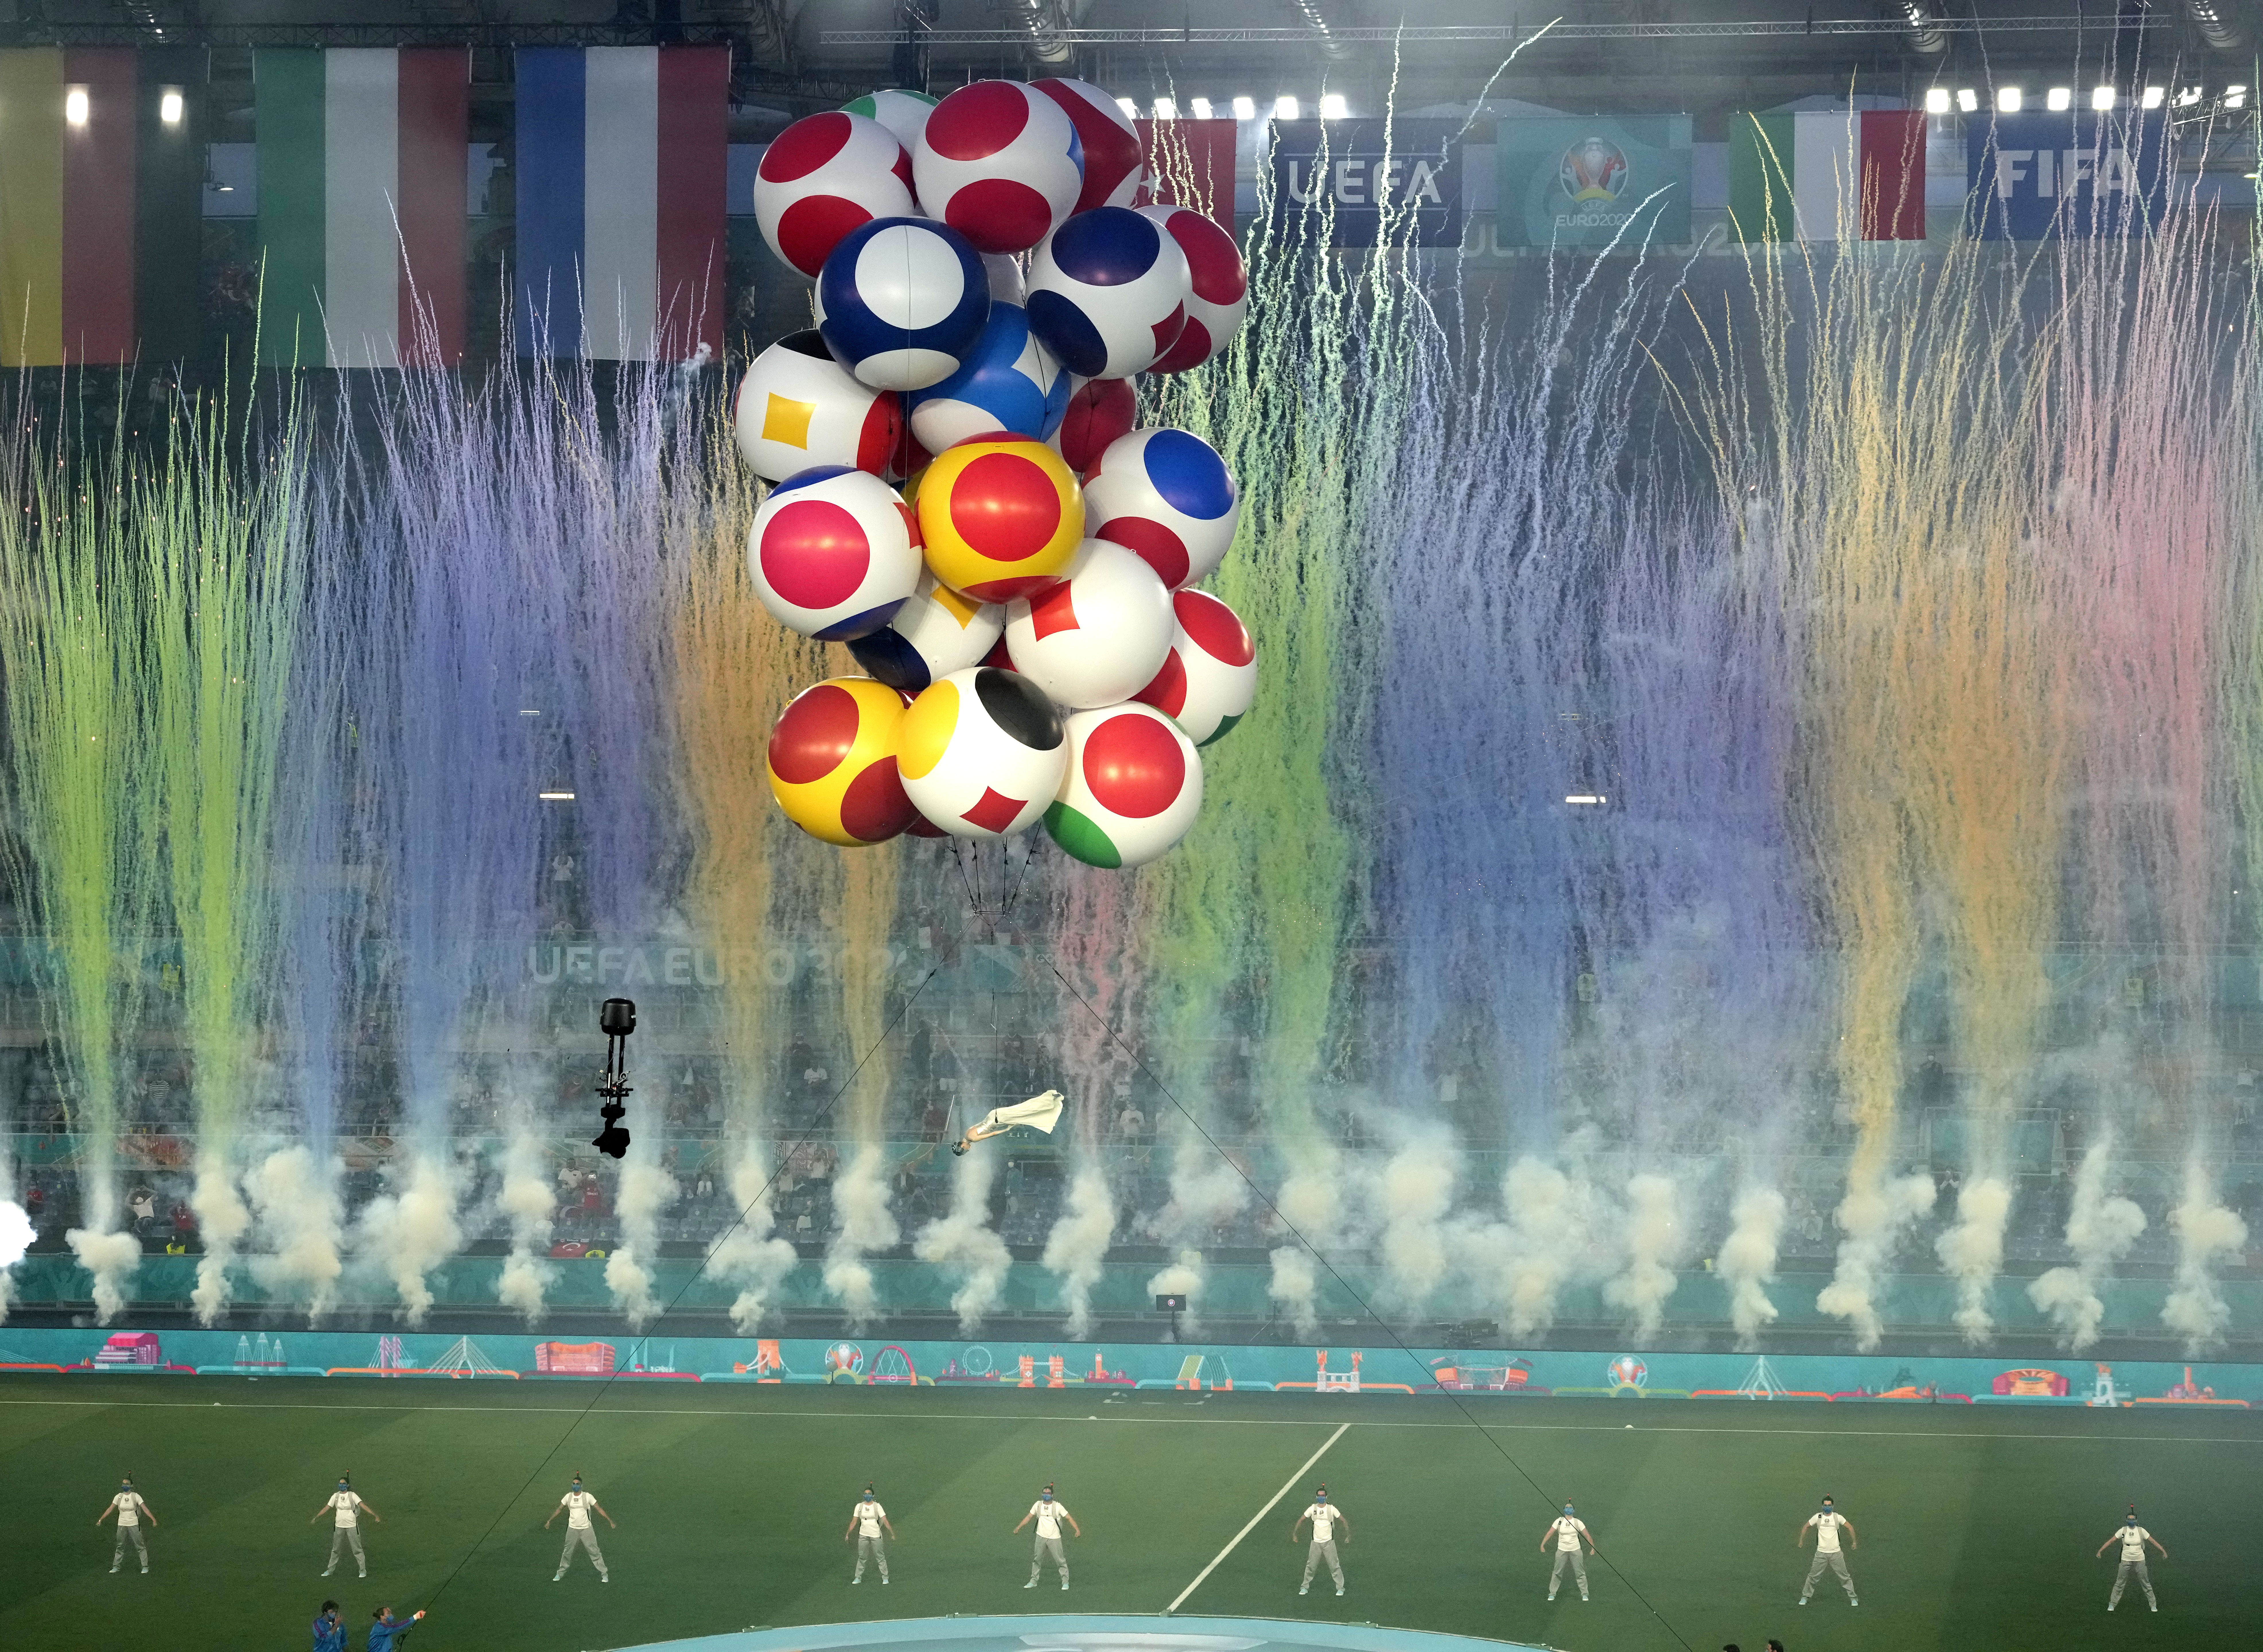 <p>Шестнадесетото европейско първенство по футбол бе открито тази вечер с бляскава церемония в Рим</p>